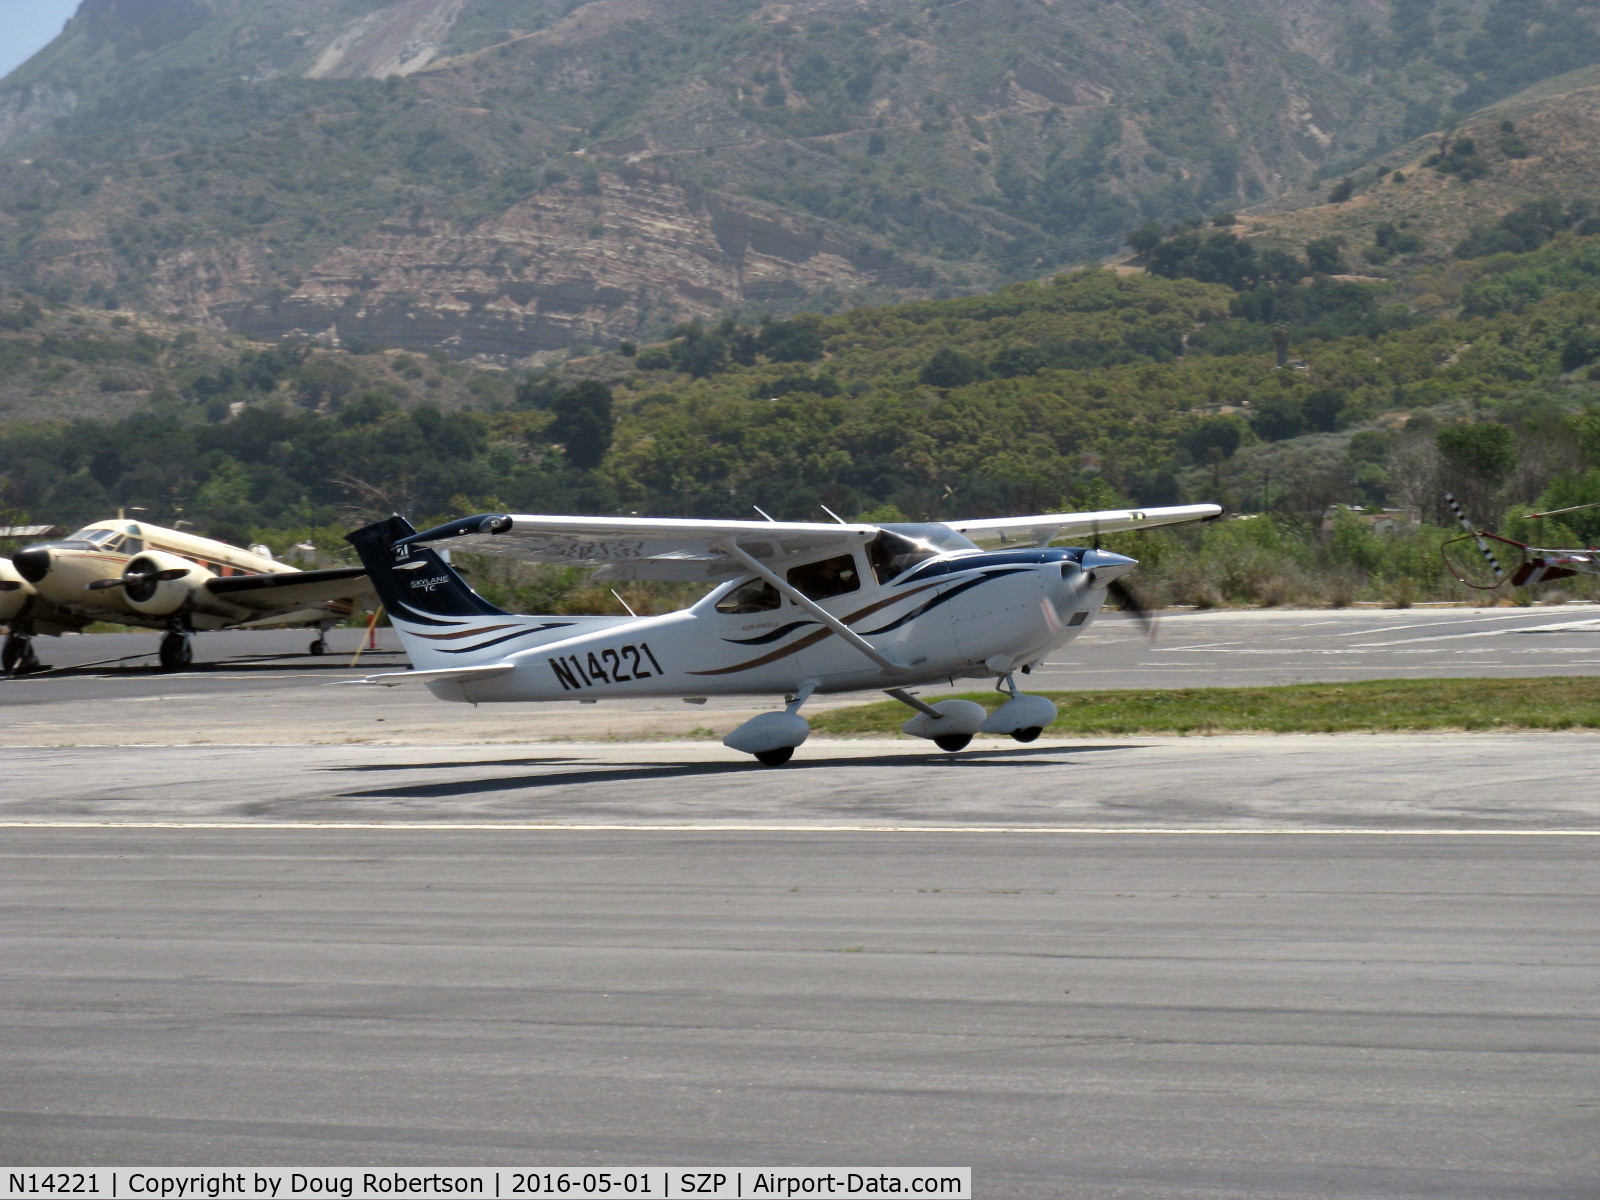 N14221, 2008 Cessna T182T Turbo Skylane C/N T18208820, 2008 Cessna T182T TURBO SKYLANE TC, Lycoming TIO-540-AK1A 235 Hp, takeoff roll Rwy 22